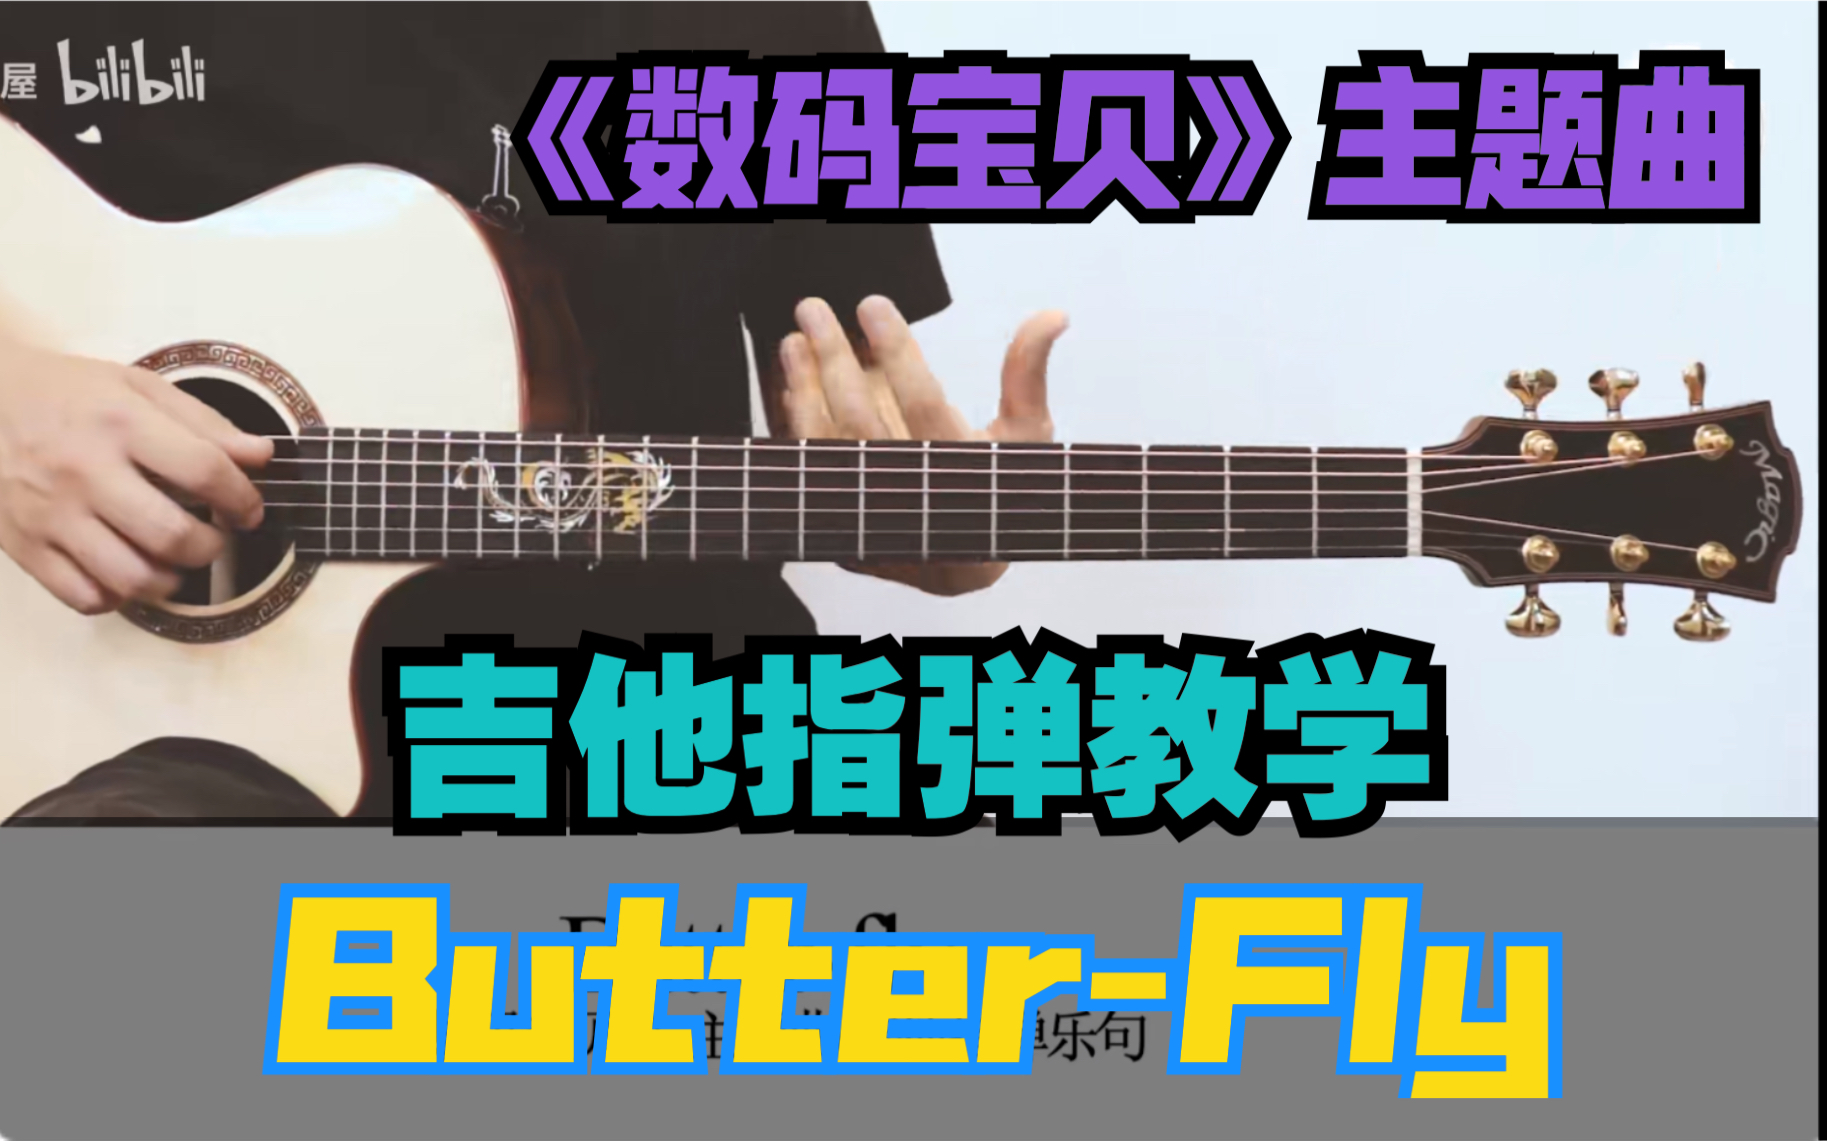 Butter Fly吉他视频-封面